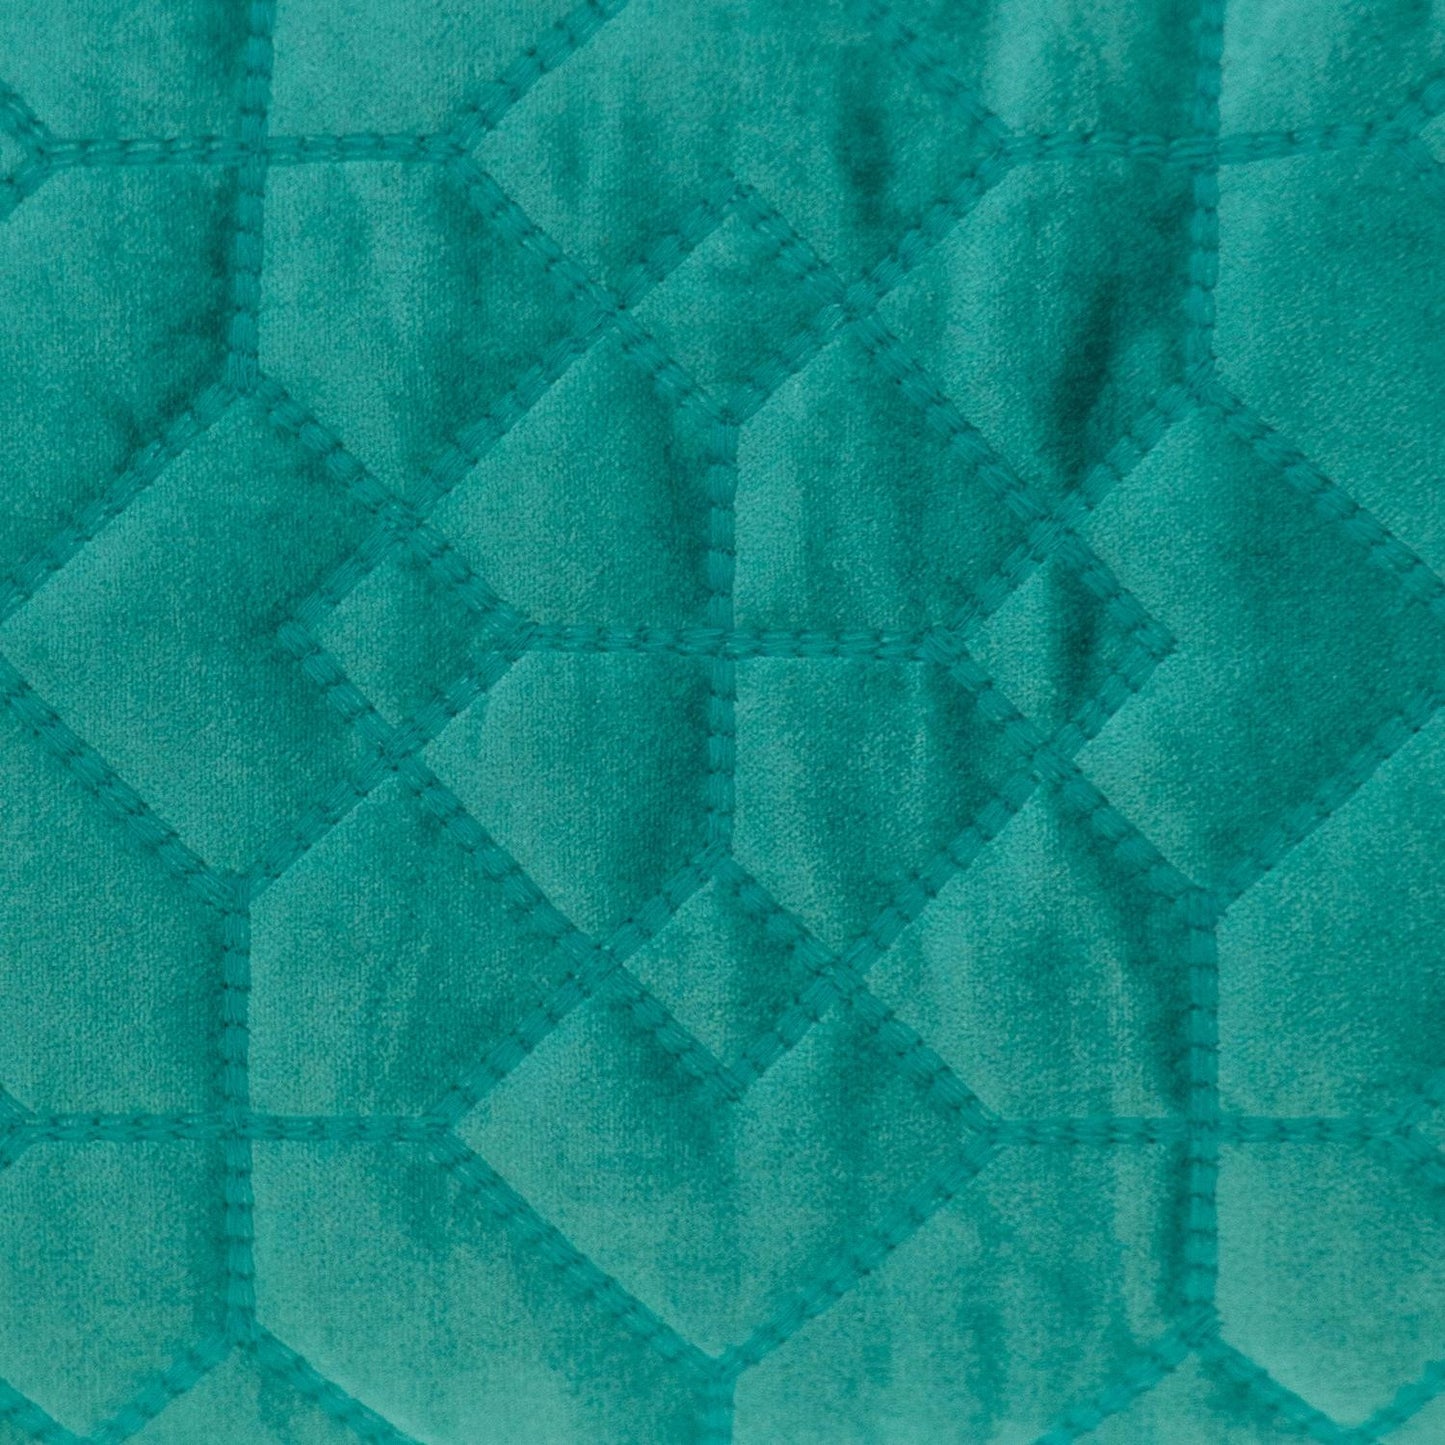 Aqua Quilted Velvet Geo Lumbar Decorative Pillow